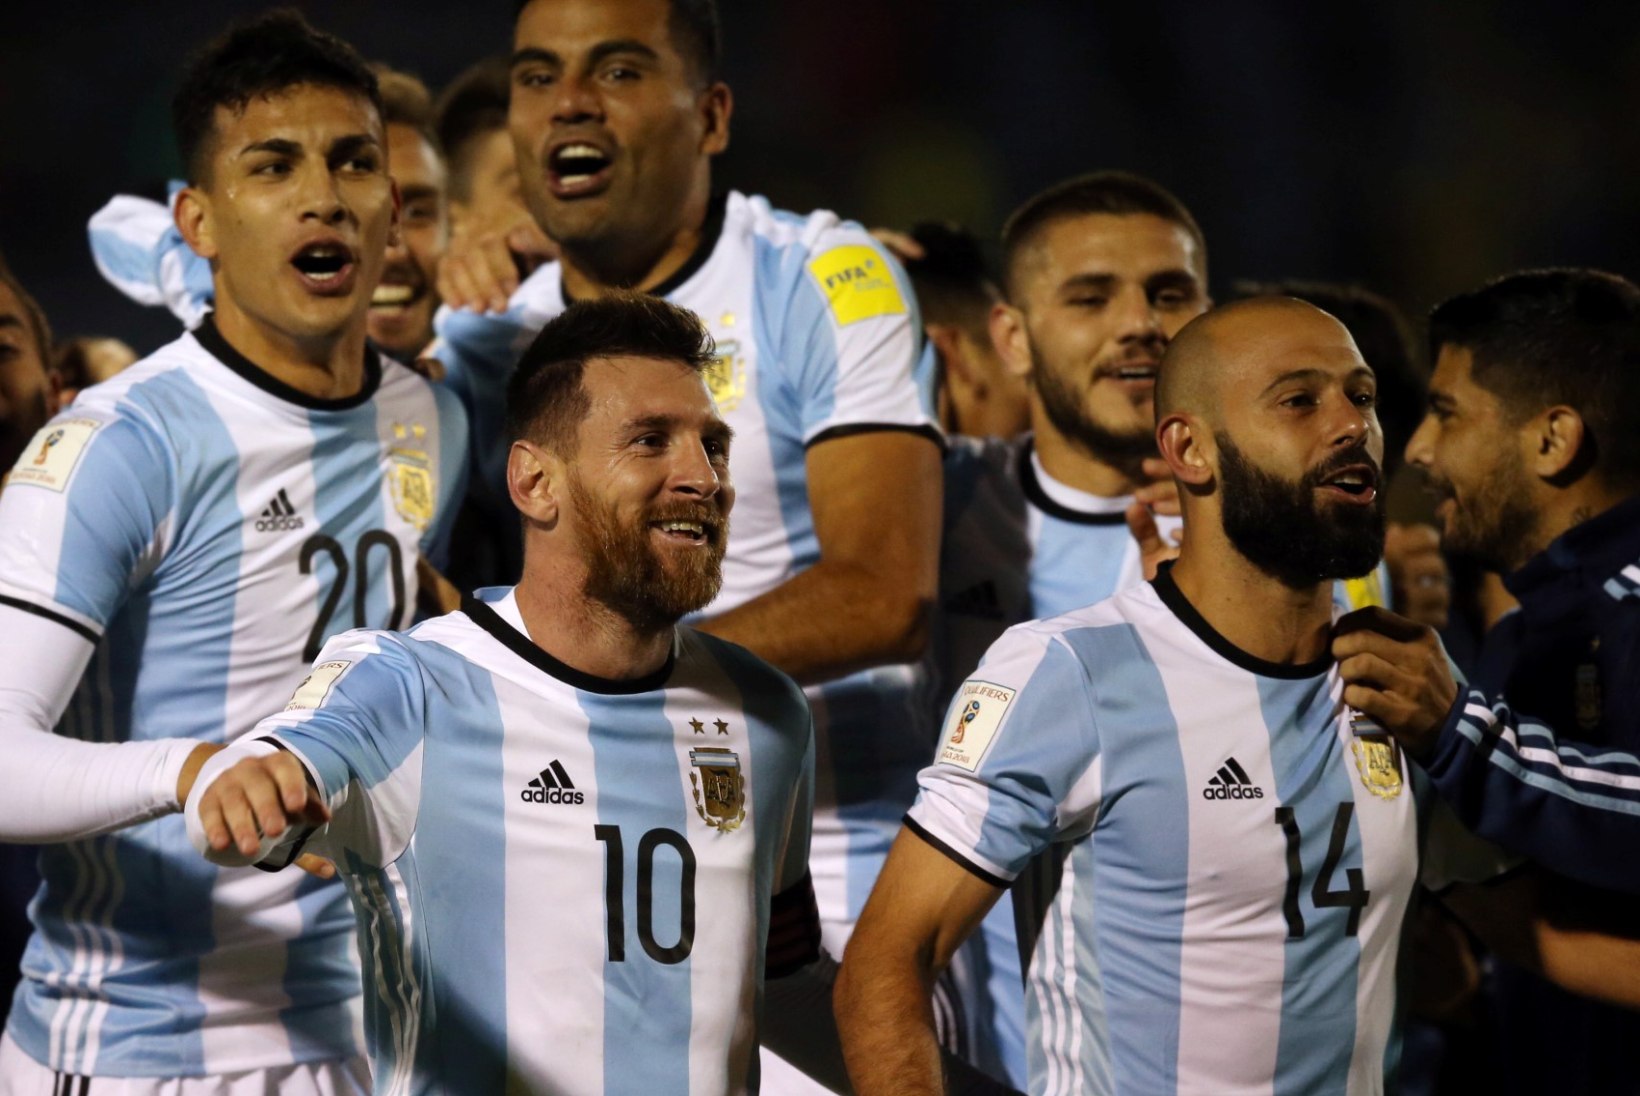 Argentina jalgpallilegend tõmbab ootamatult väga edukale karjäärile joone alla